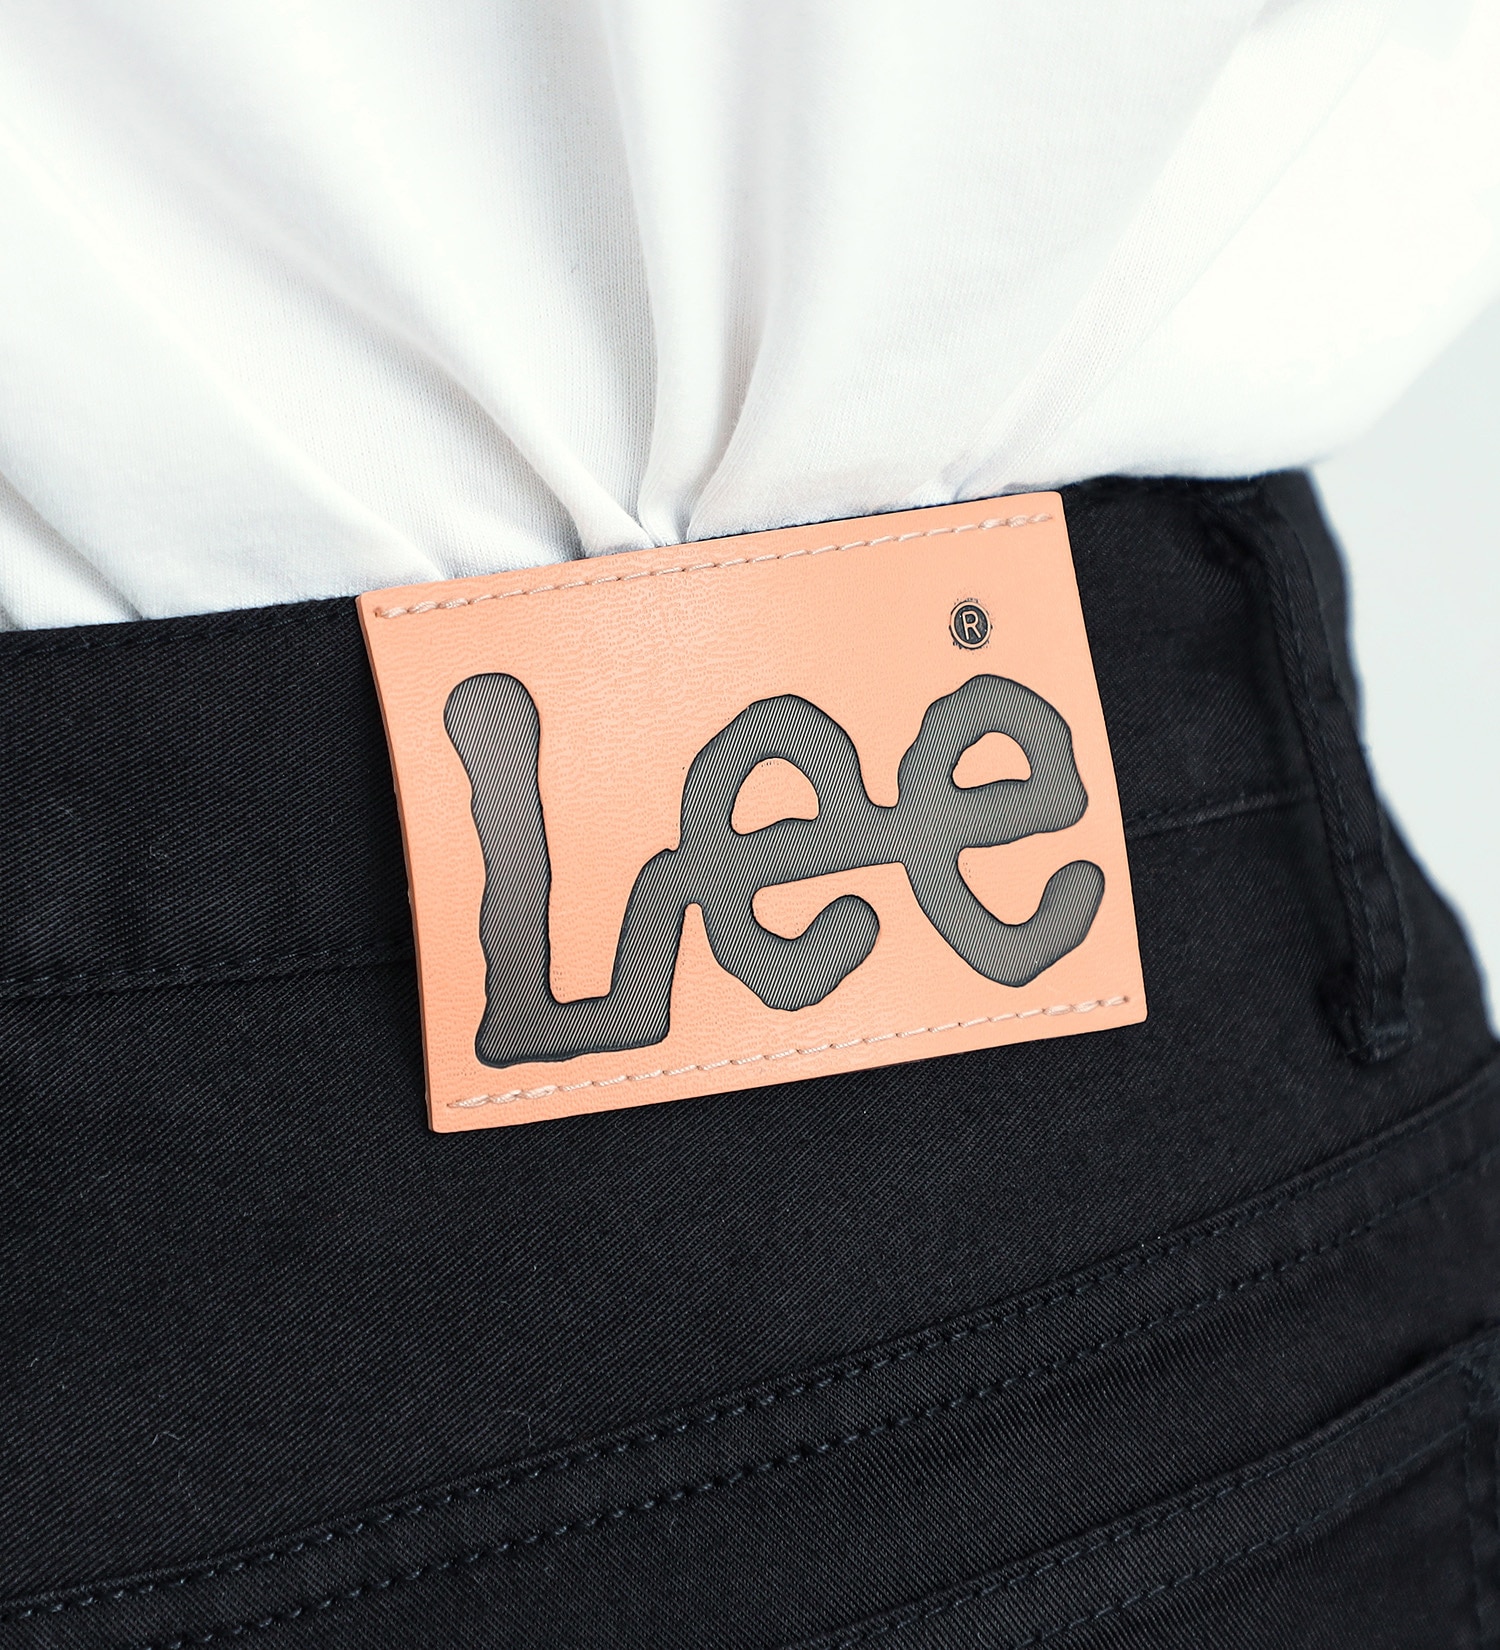 Lee(リー)の【おまとめ割対象】【試着対象】ドライタッチで涼しく快適AMERICAN STANDARD 102 ブーツカット【COOL】|パンツ/パンツ/メンズ|ブラック